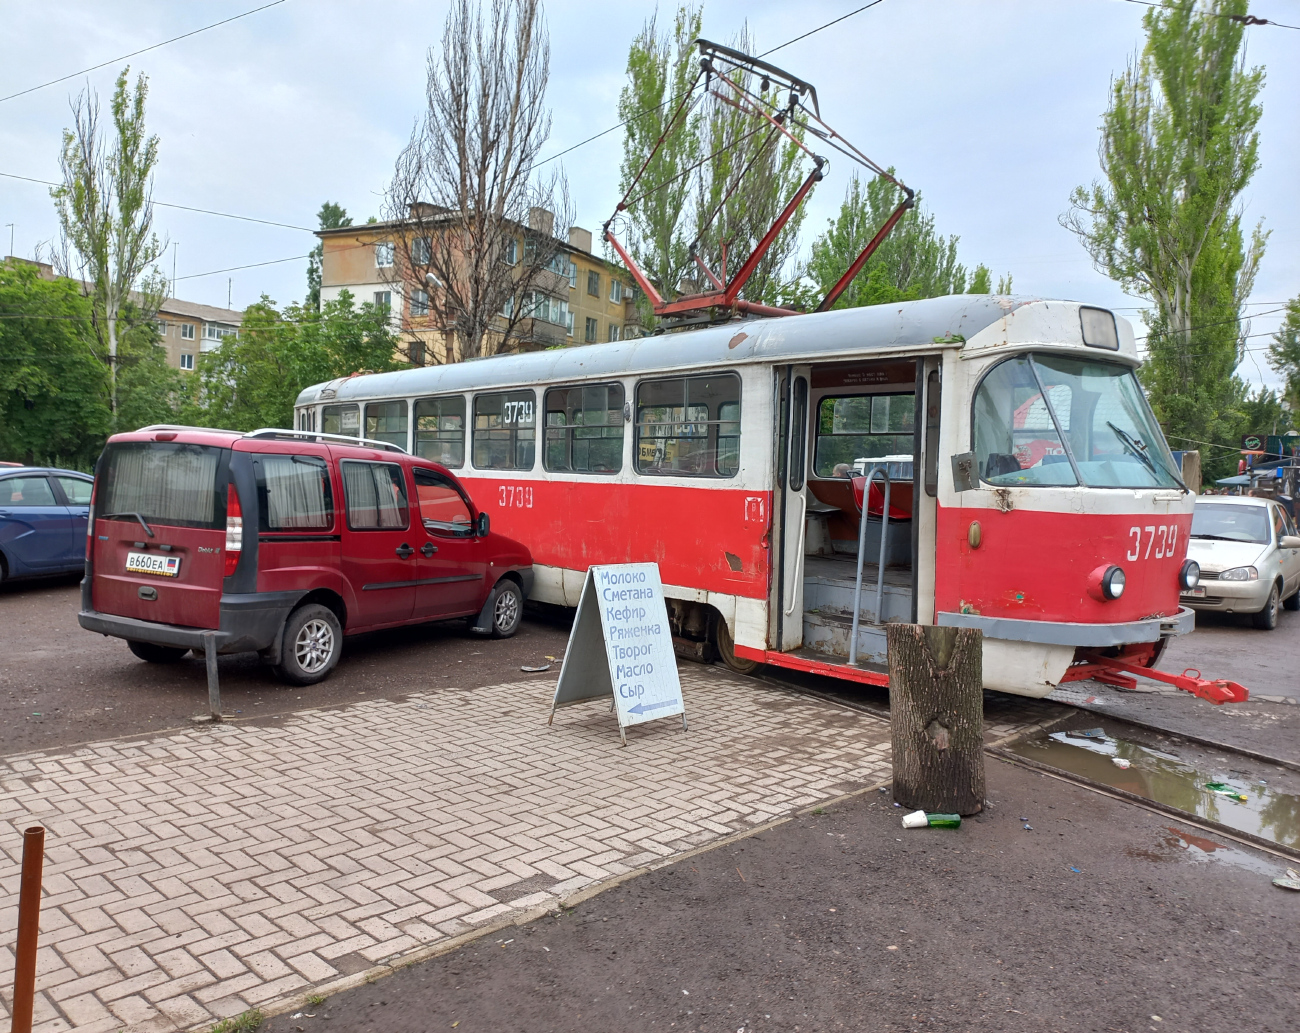 Донецк, Tatra T3SU (двухдверная) № 3739; Донецк — Трамвайные линии: сеть 3-го депо